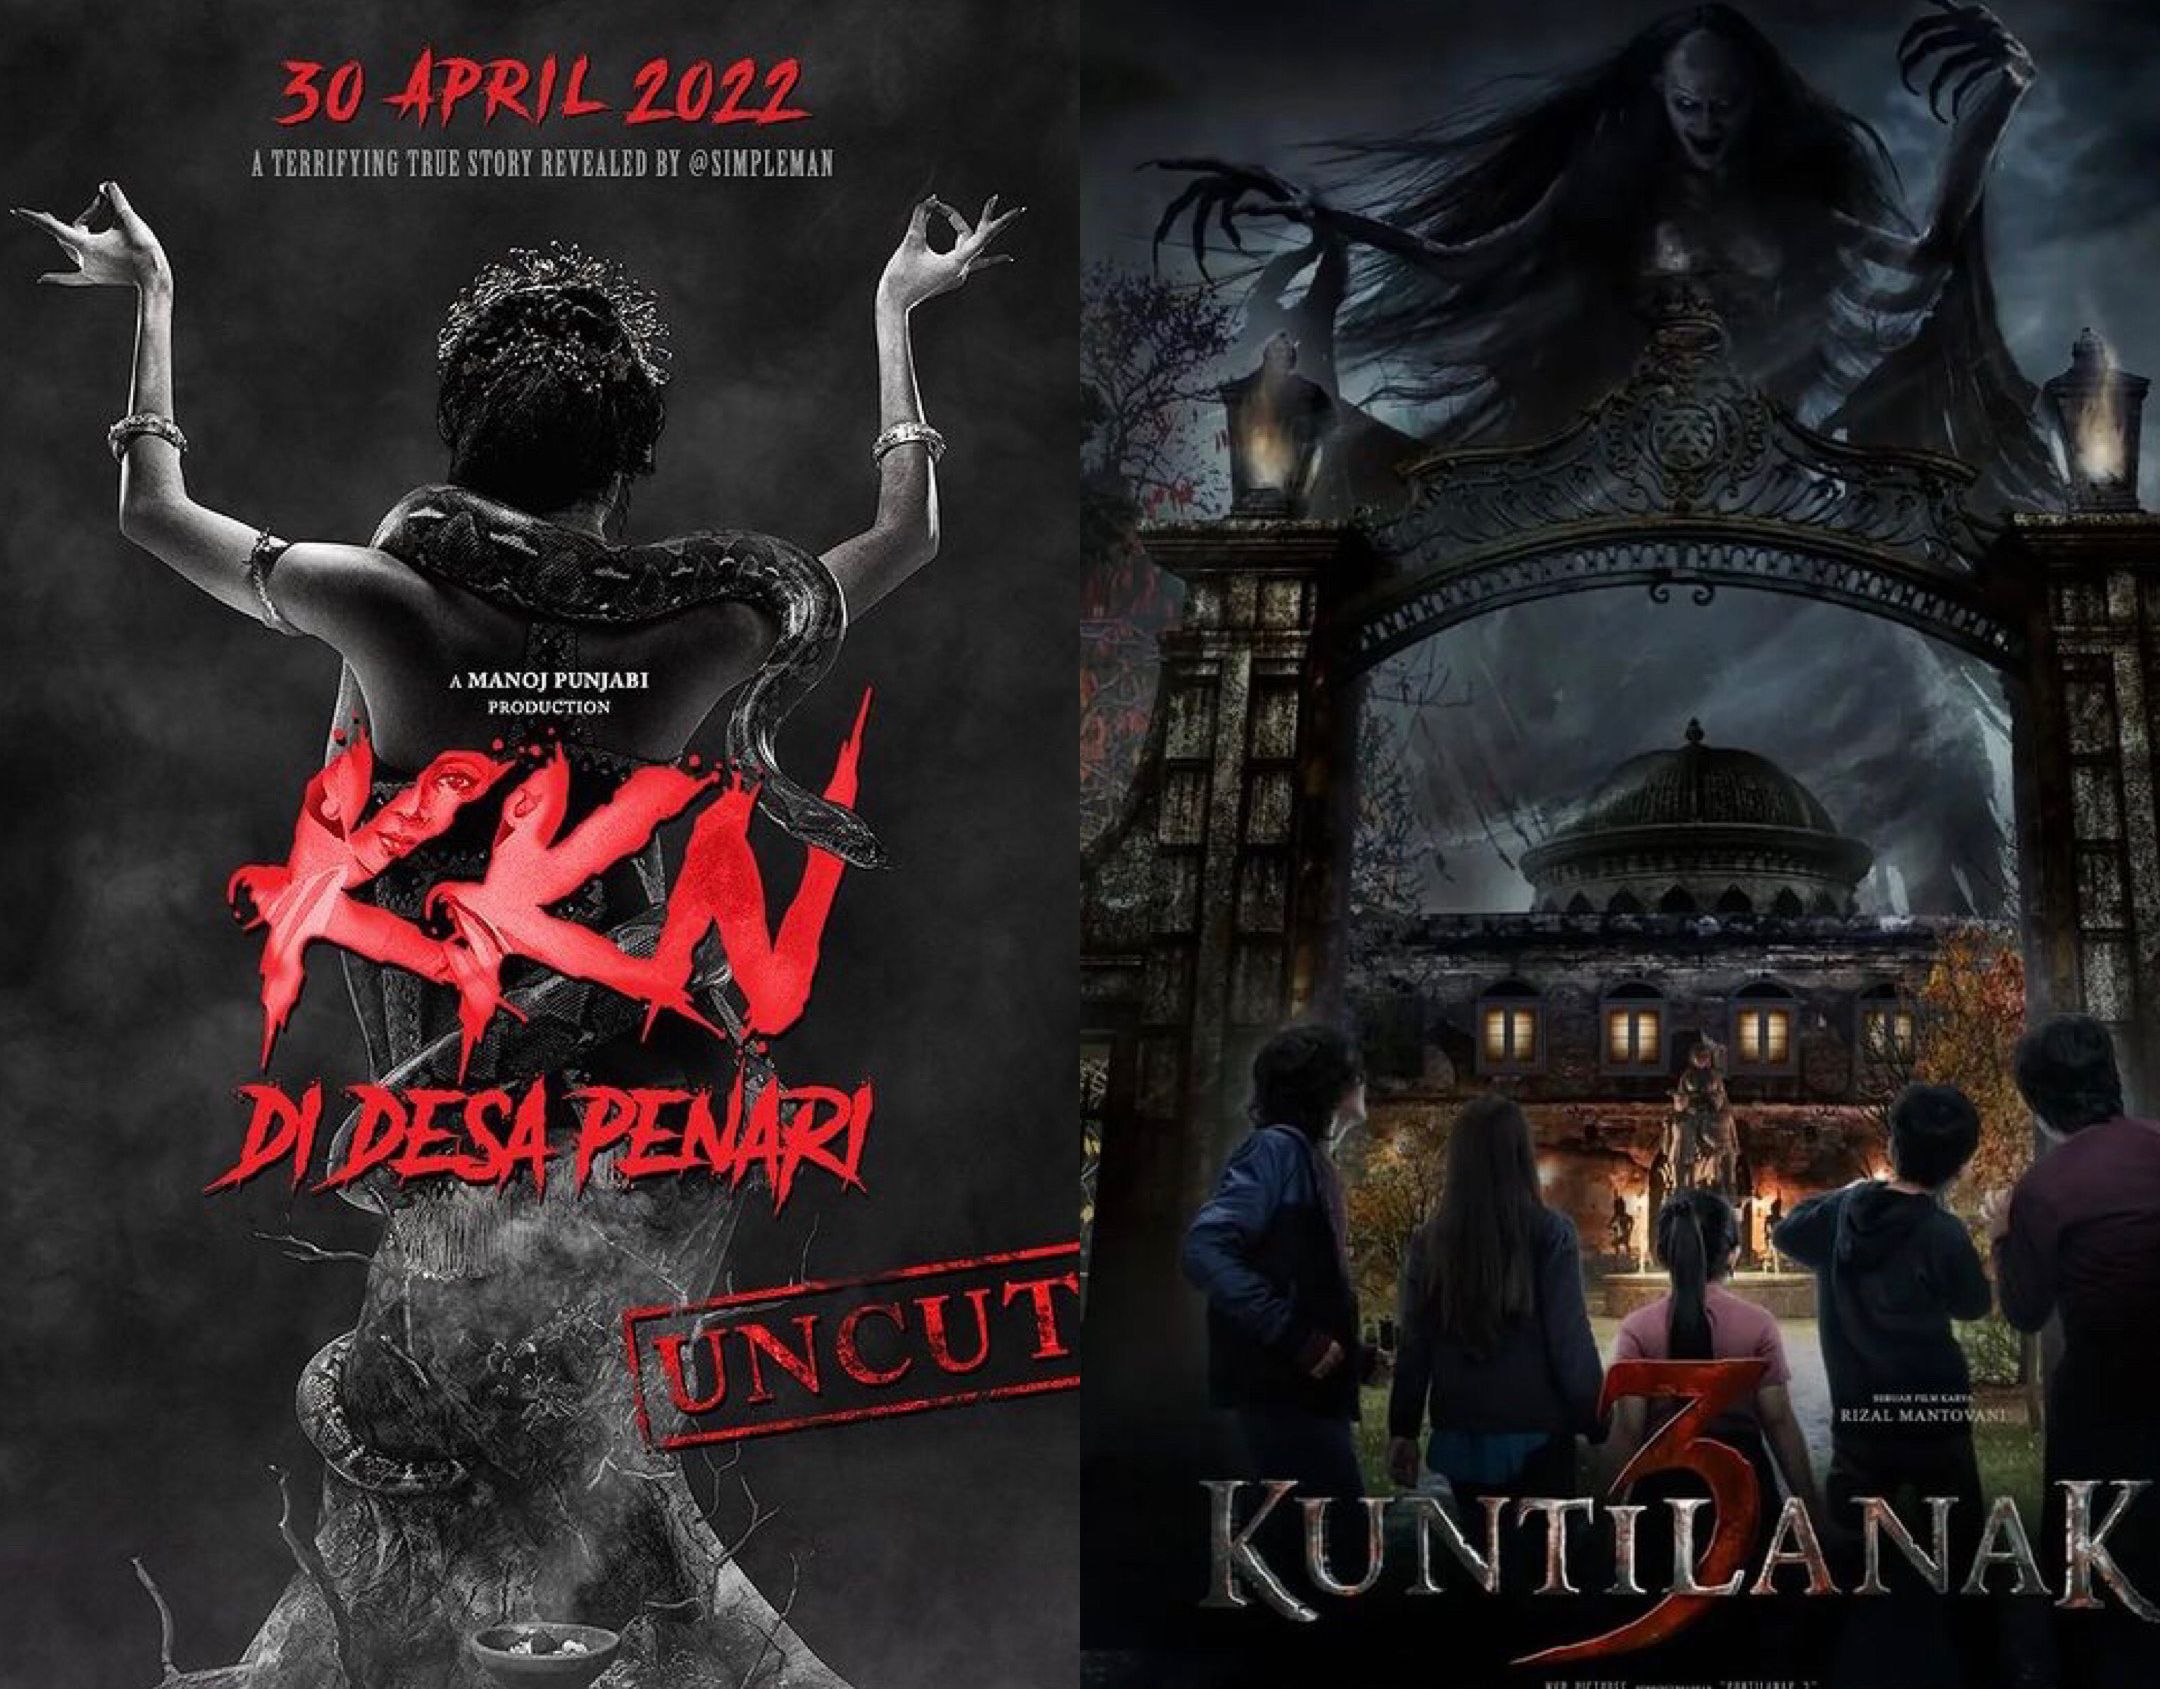 5 Film Horor Indonesia Yang Bakal Tayang April 2022 Di Bioskop Xxi Kkn Di Desa Penari Hingga 